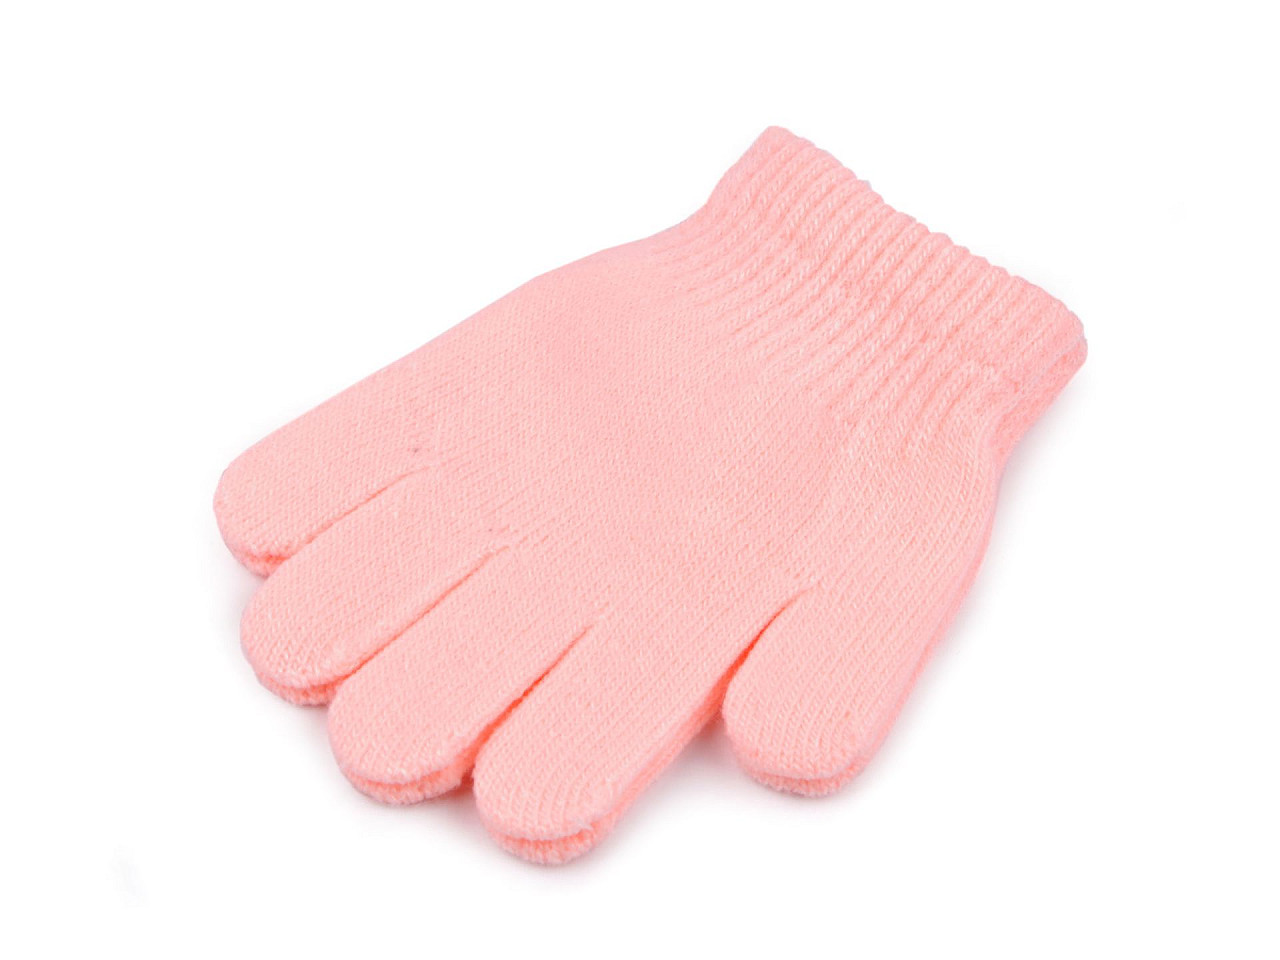 Kinder Strickhandschuhe, rosa hell, 1 Paar